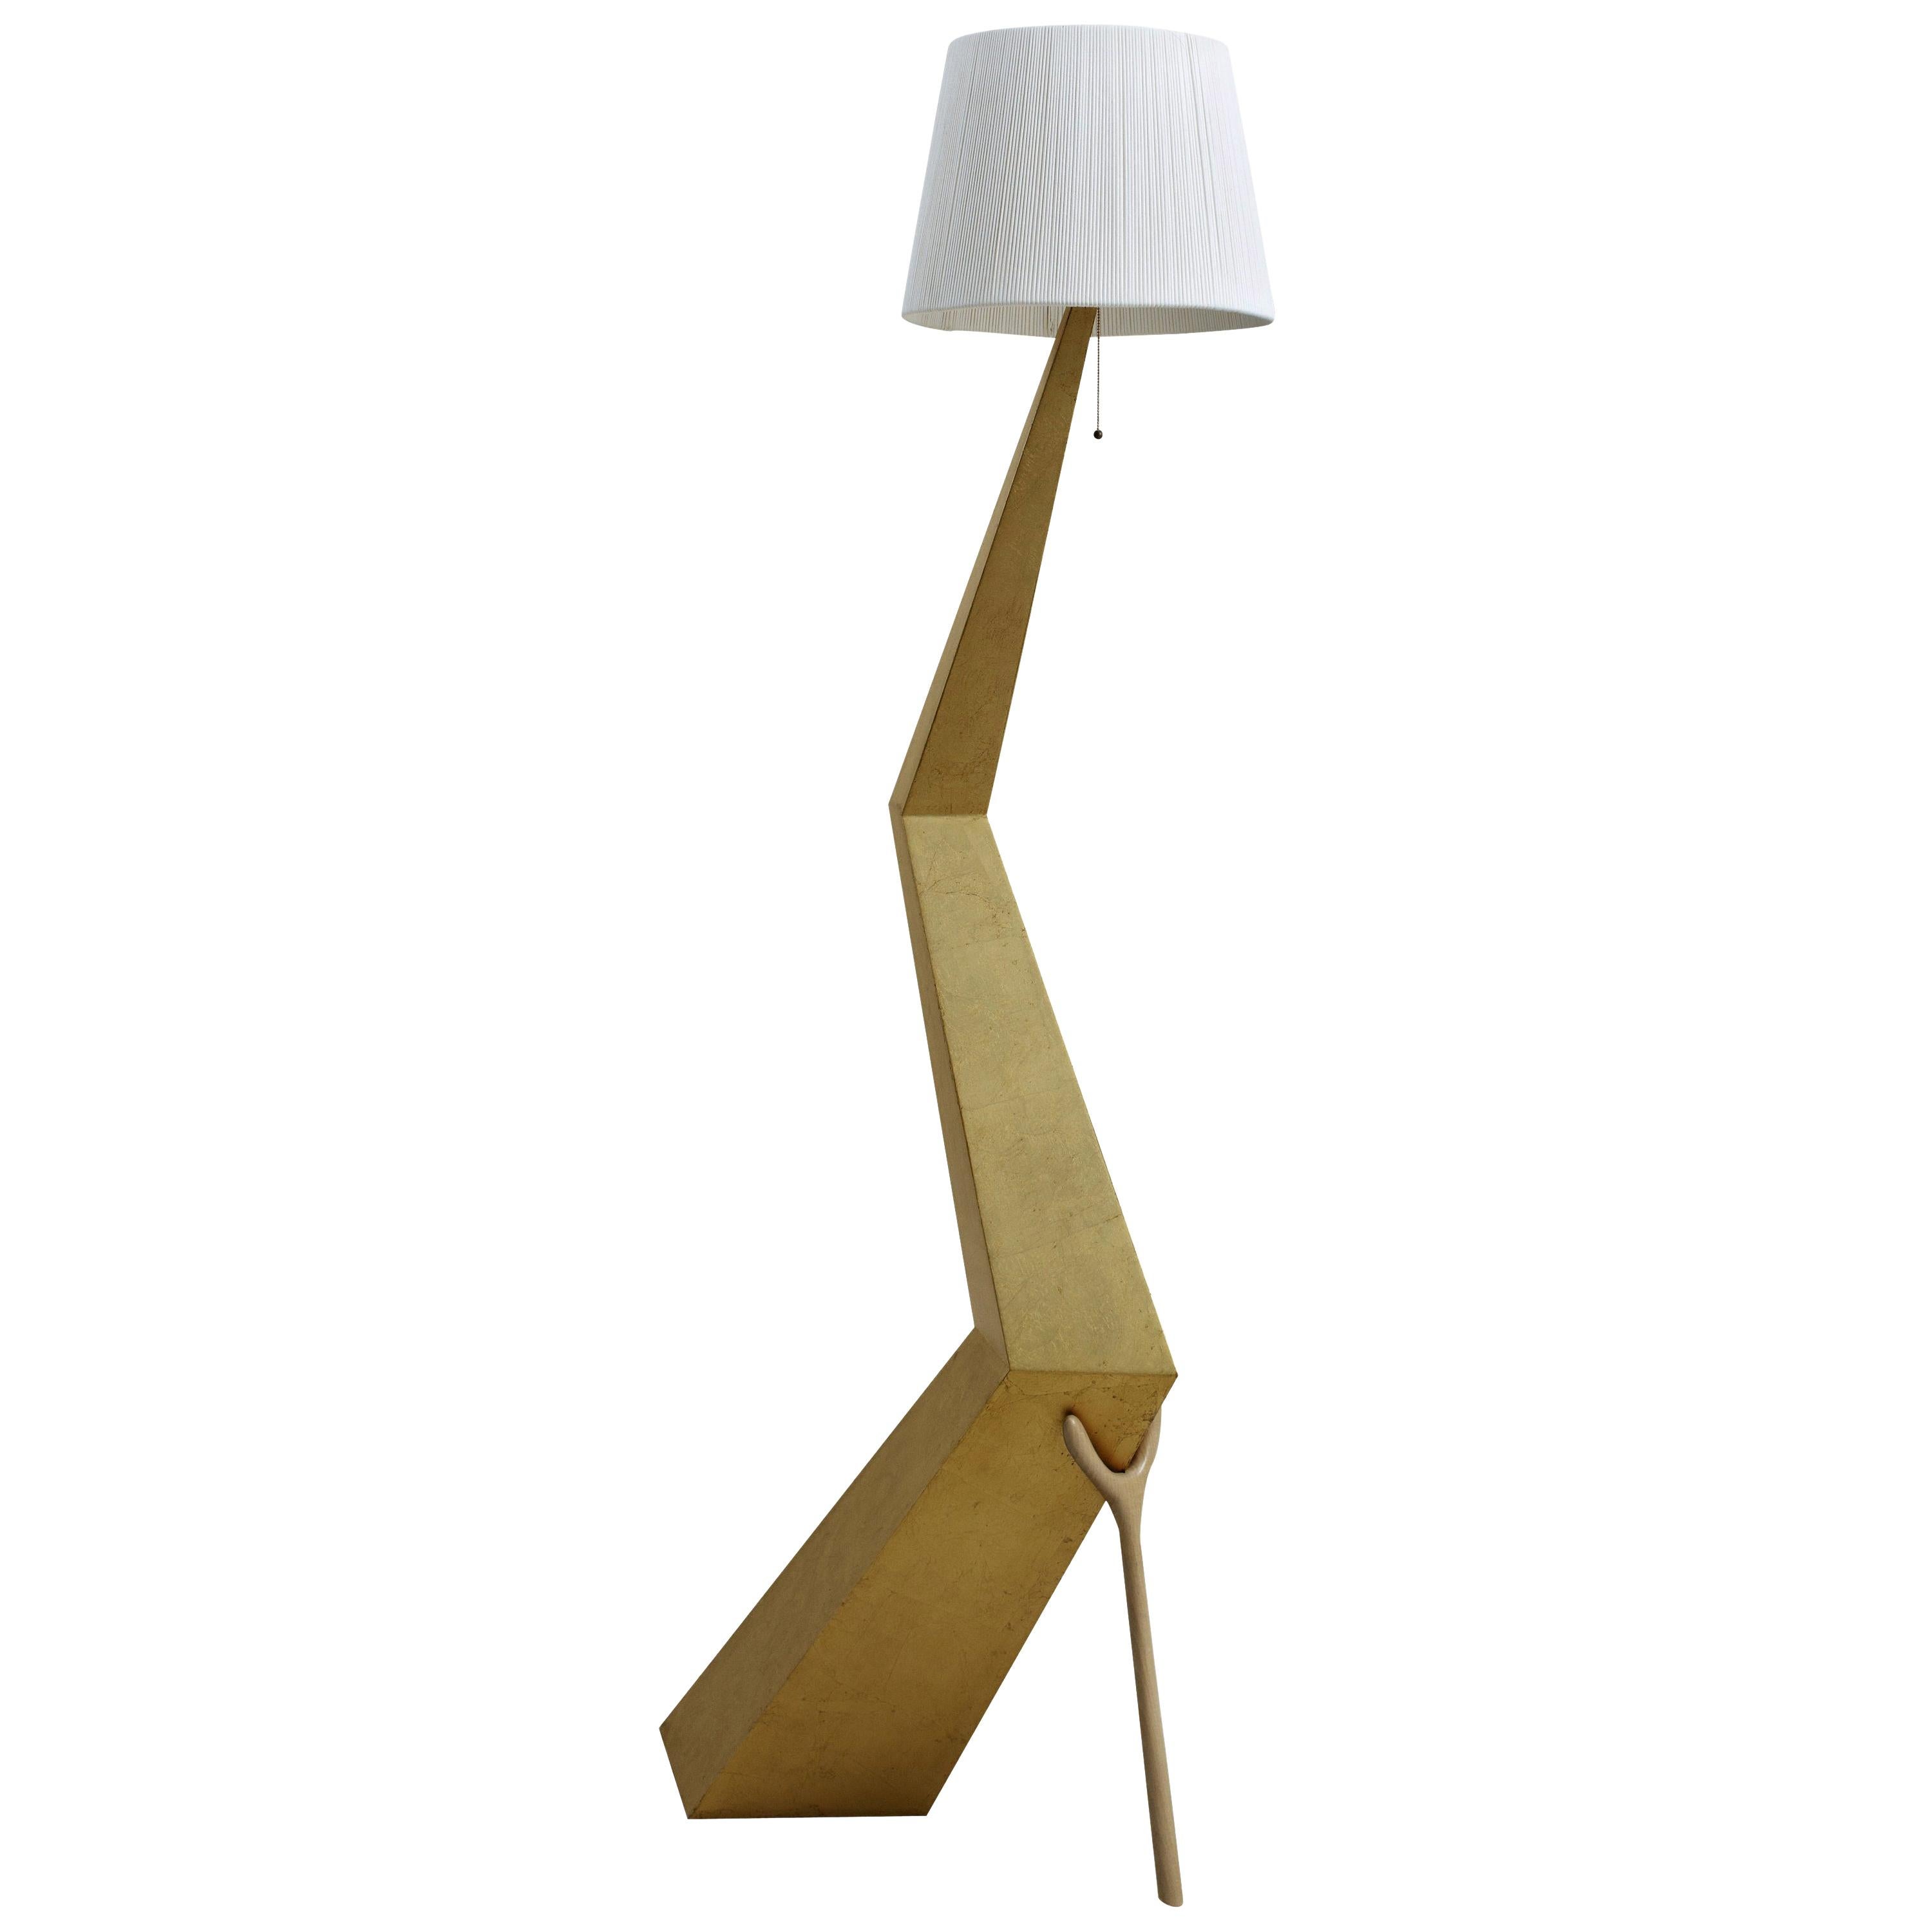 Die von Salvador Dali entworfene Lampe Braceli wird von BD furniture in Barcelona hergestellt.

Bracelli
Paneelstruktur mit versilberter Polyesterlackierung (Feines Blattgold) überzogen.
Lampenschirm aus elfenbeinfarbener Baumwolle und Viskose.